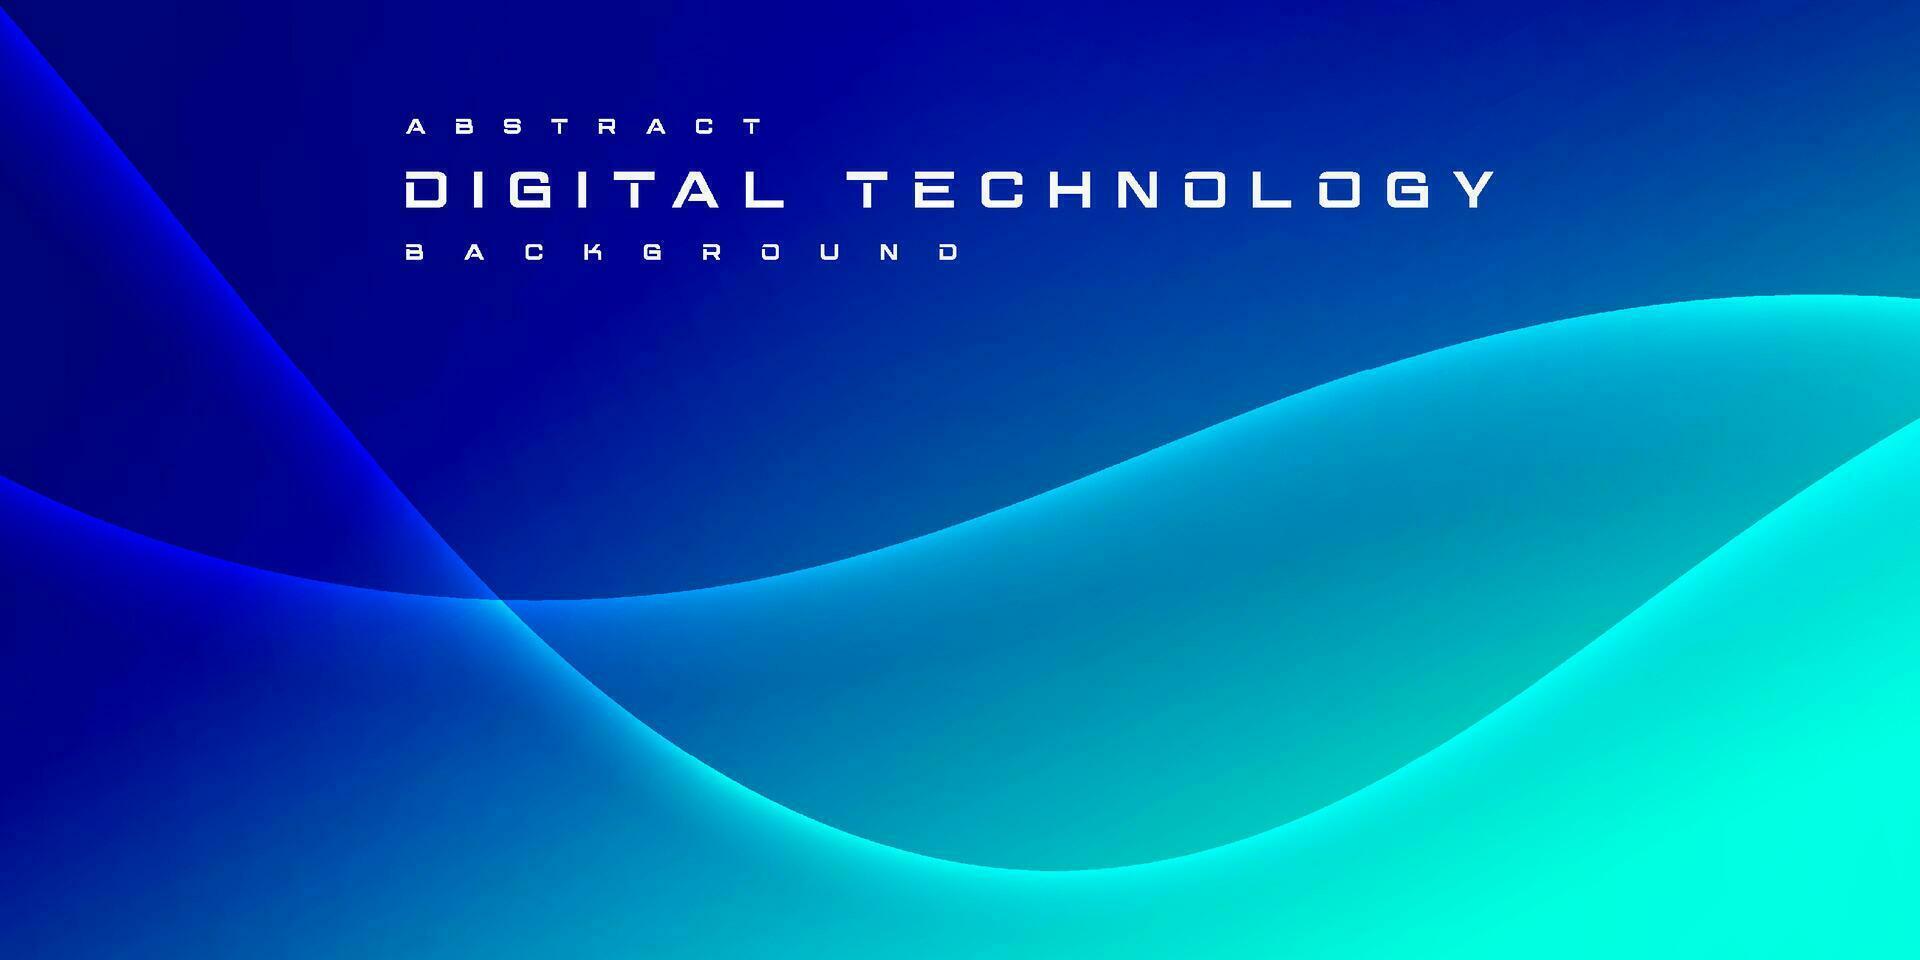 abstract digitaal technologie futuristische stroomkring blauw groen achtergrond, cyber wetenschap techniek, innovatie communicatie toekomst, ai groot gegevens, internet netwerk verbinding, wolk hi-tech illustratie vector